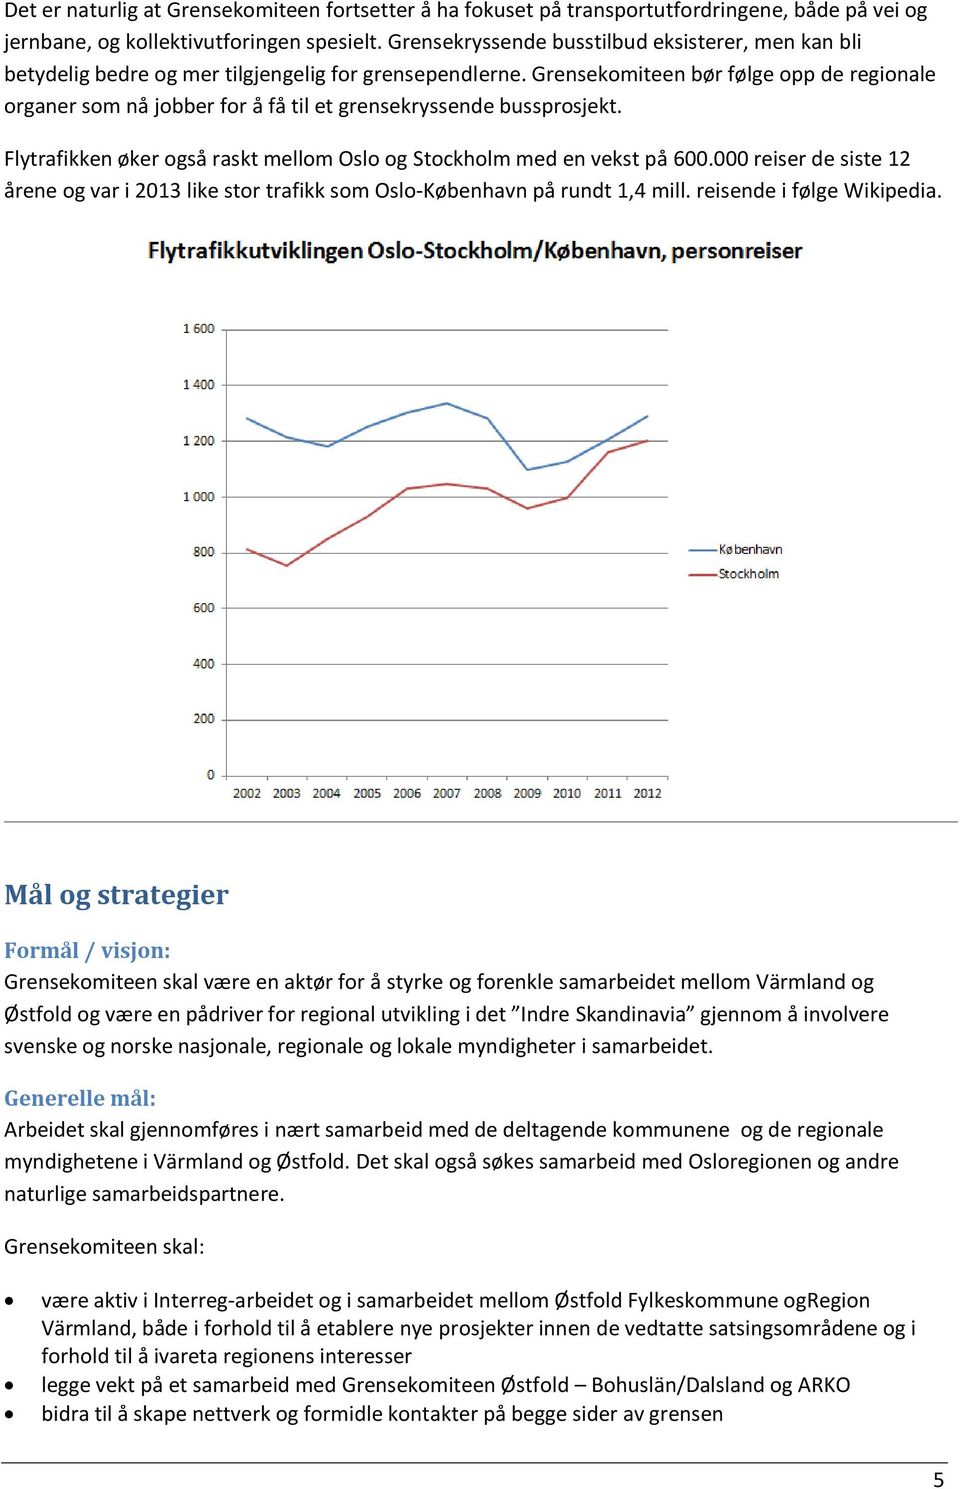 Grensekomiteen bør følge opp de regionale organer som nå jobber for å få til et grensekryssende bussprosjekt. Flytrafikken øker også raskt mellom Oslo og Stockholm med en vekst på 600.